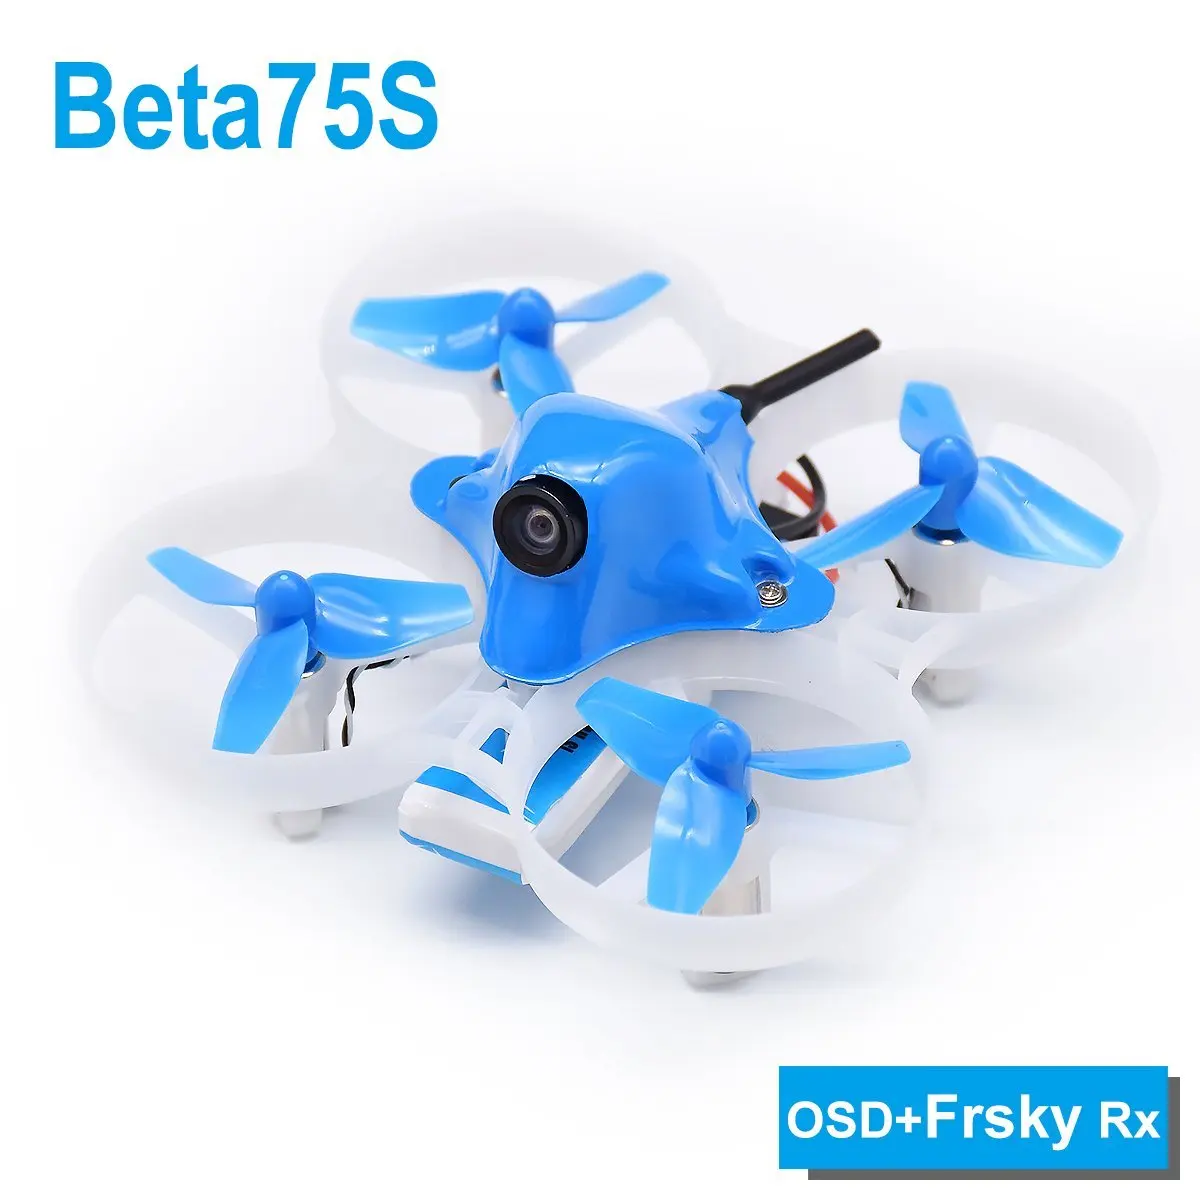 Фото Betafpv Beta75S БНФ крошечные Whoop Quadcopter Frsky приемник с OSD для 8X20 двигателя | Игрушки и